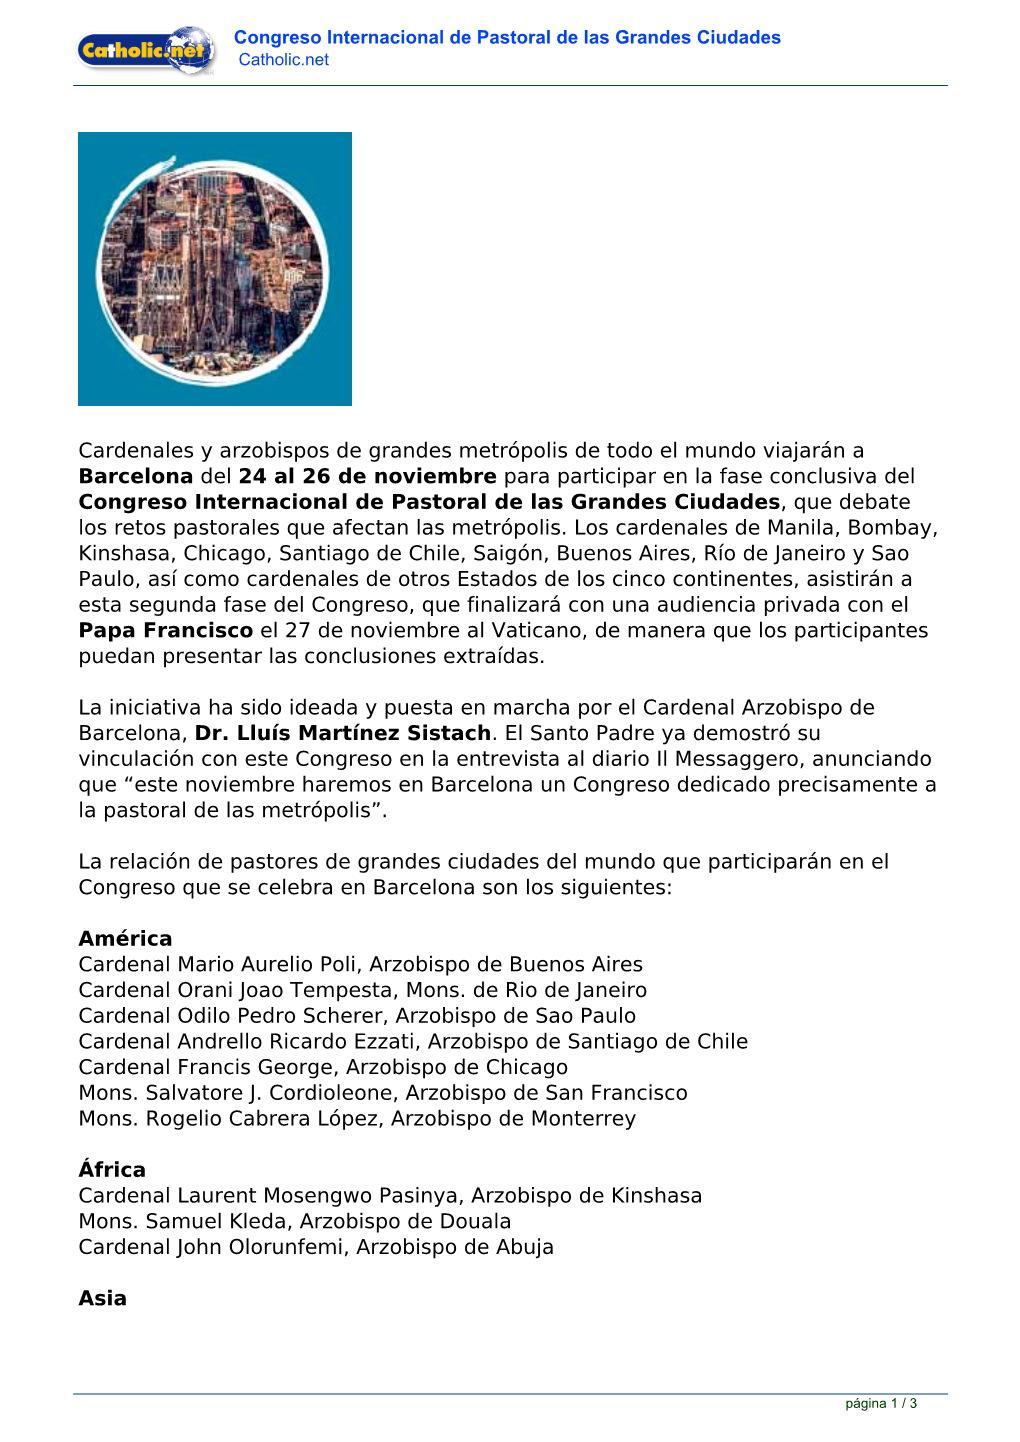 Congreso Internacional De Pastoral De Las Grandes Ciudades Catholic.Net